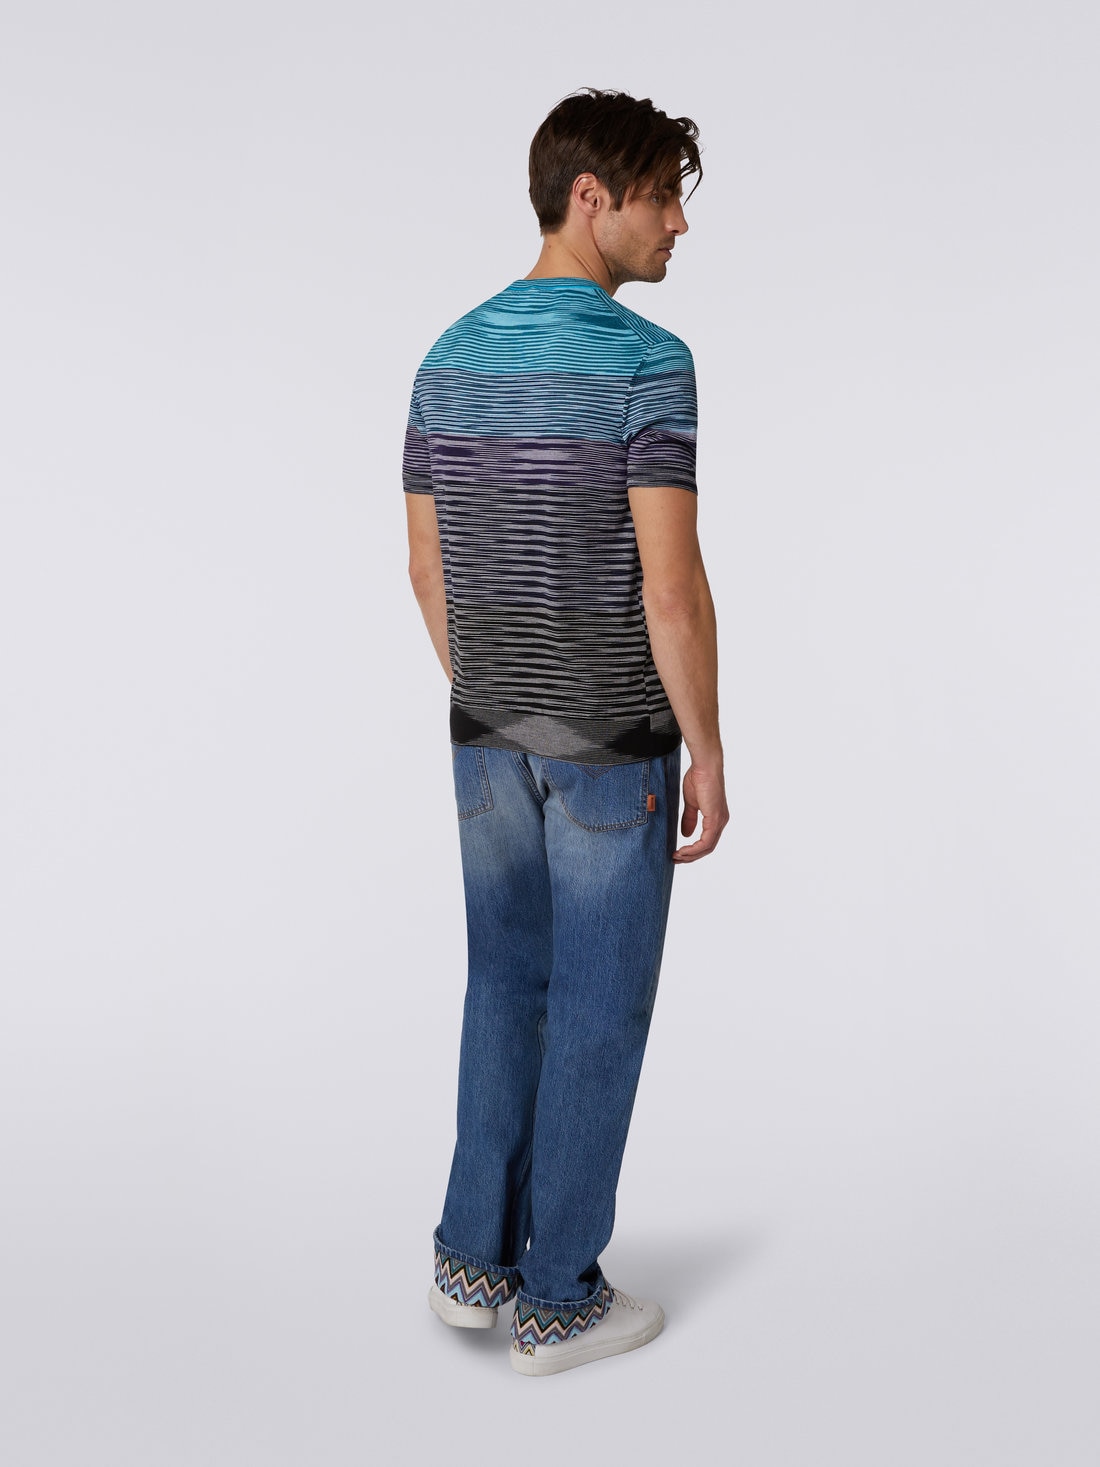 Short-sleeved crew-neck T-shirt in cotton knit with dégradé stripes, Blue, Purple & Black - US23SL1CBK012QS91DS - 3